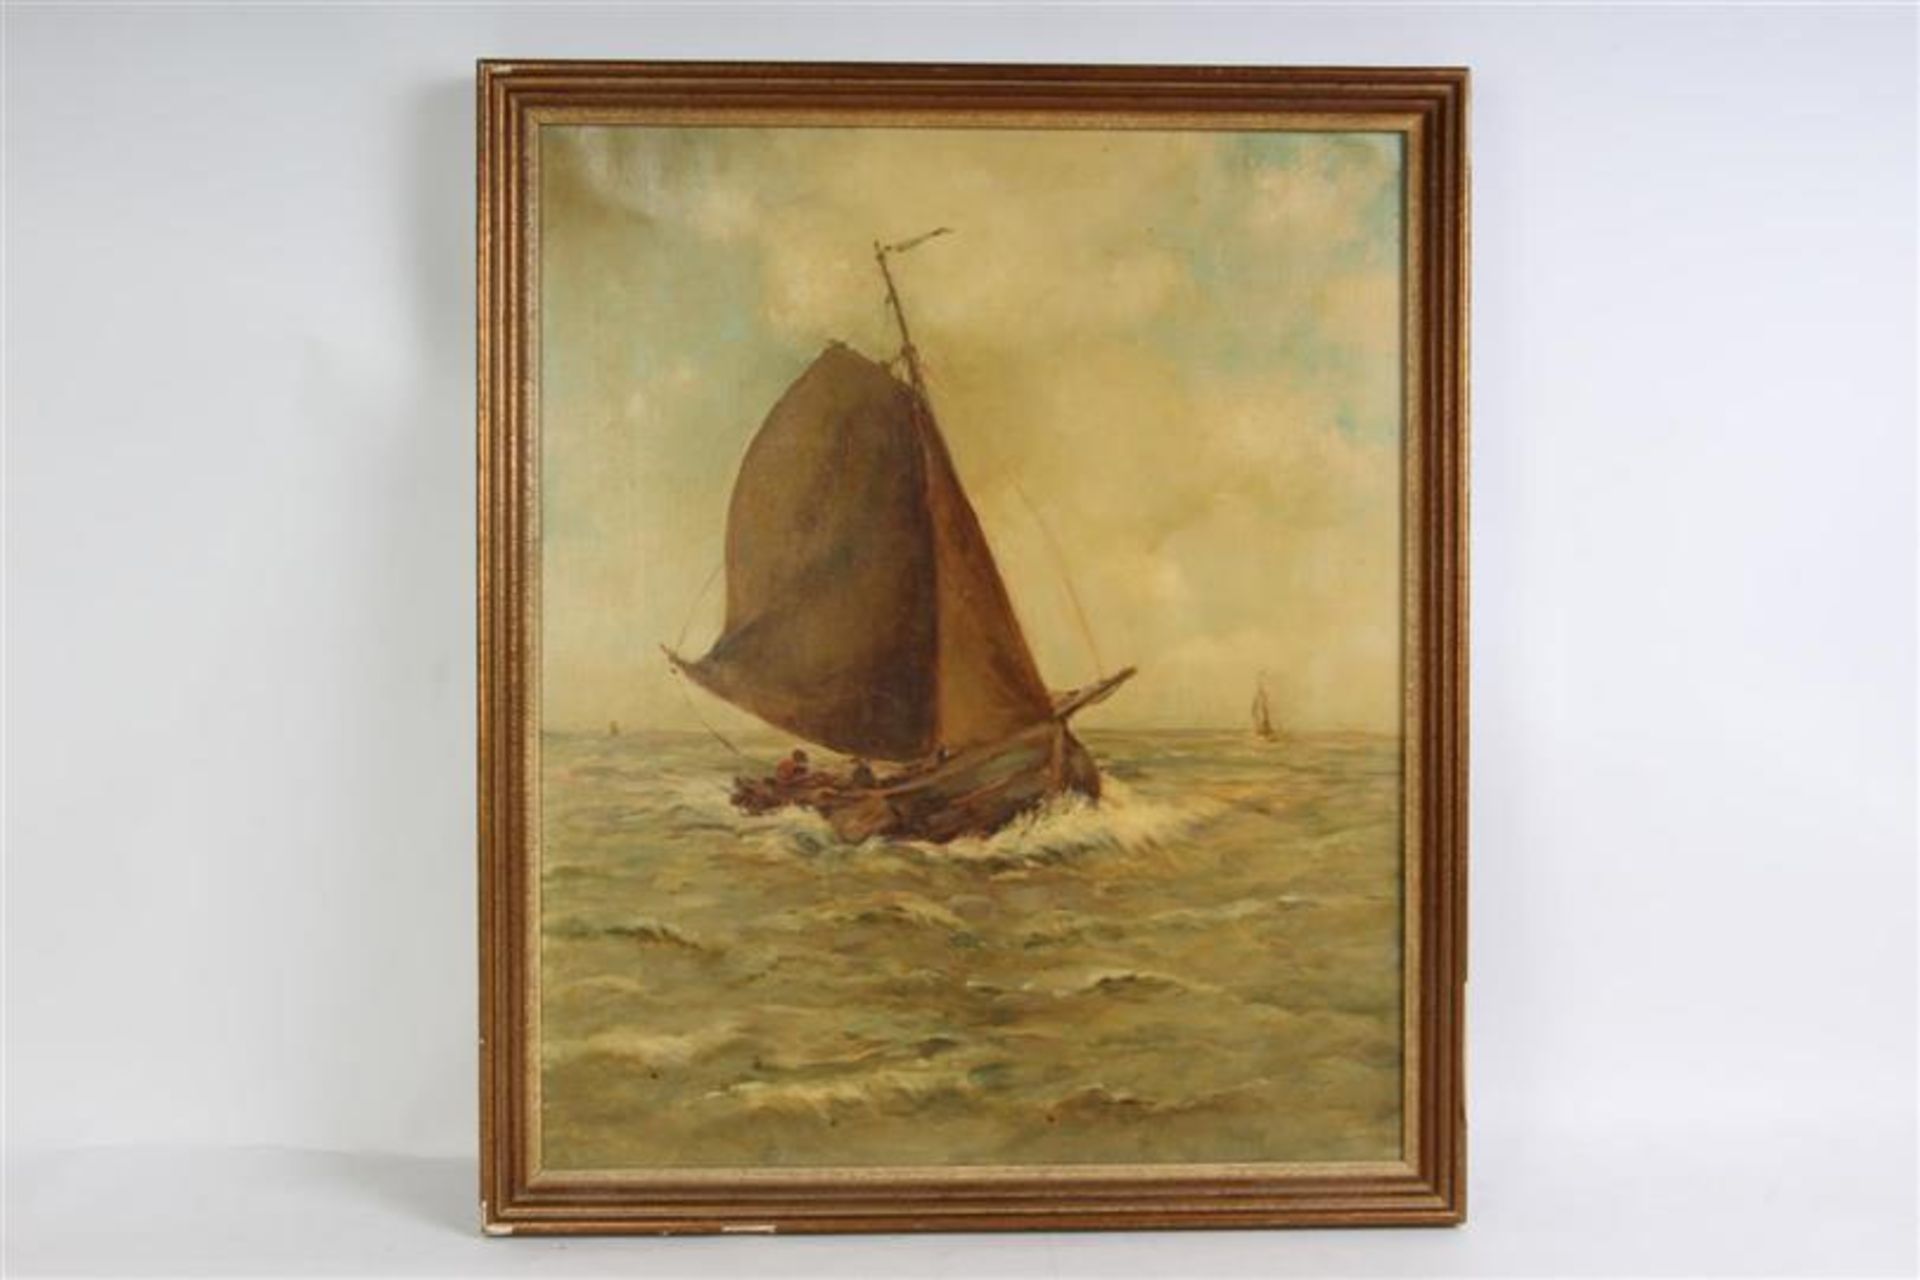 Schilderij op doek 'Schepen op zee'. HxB: 59 x 49 cm.